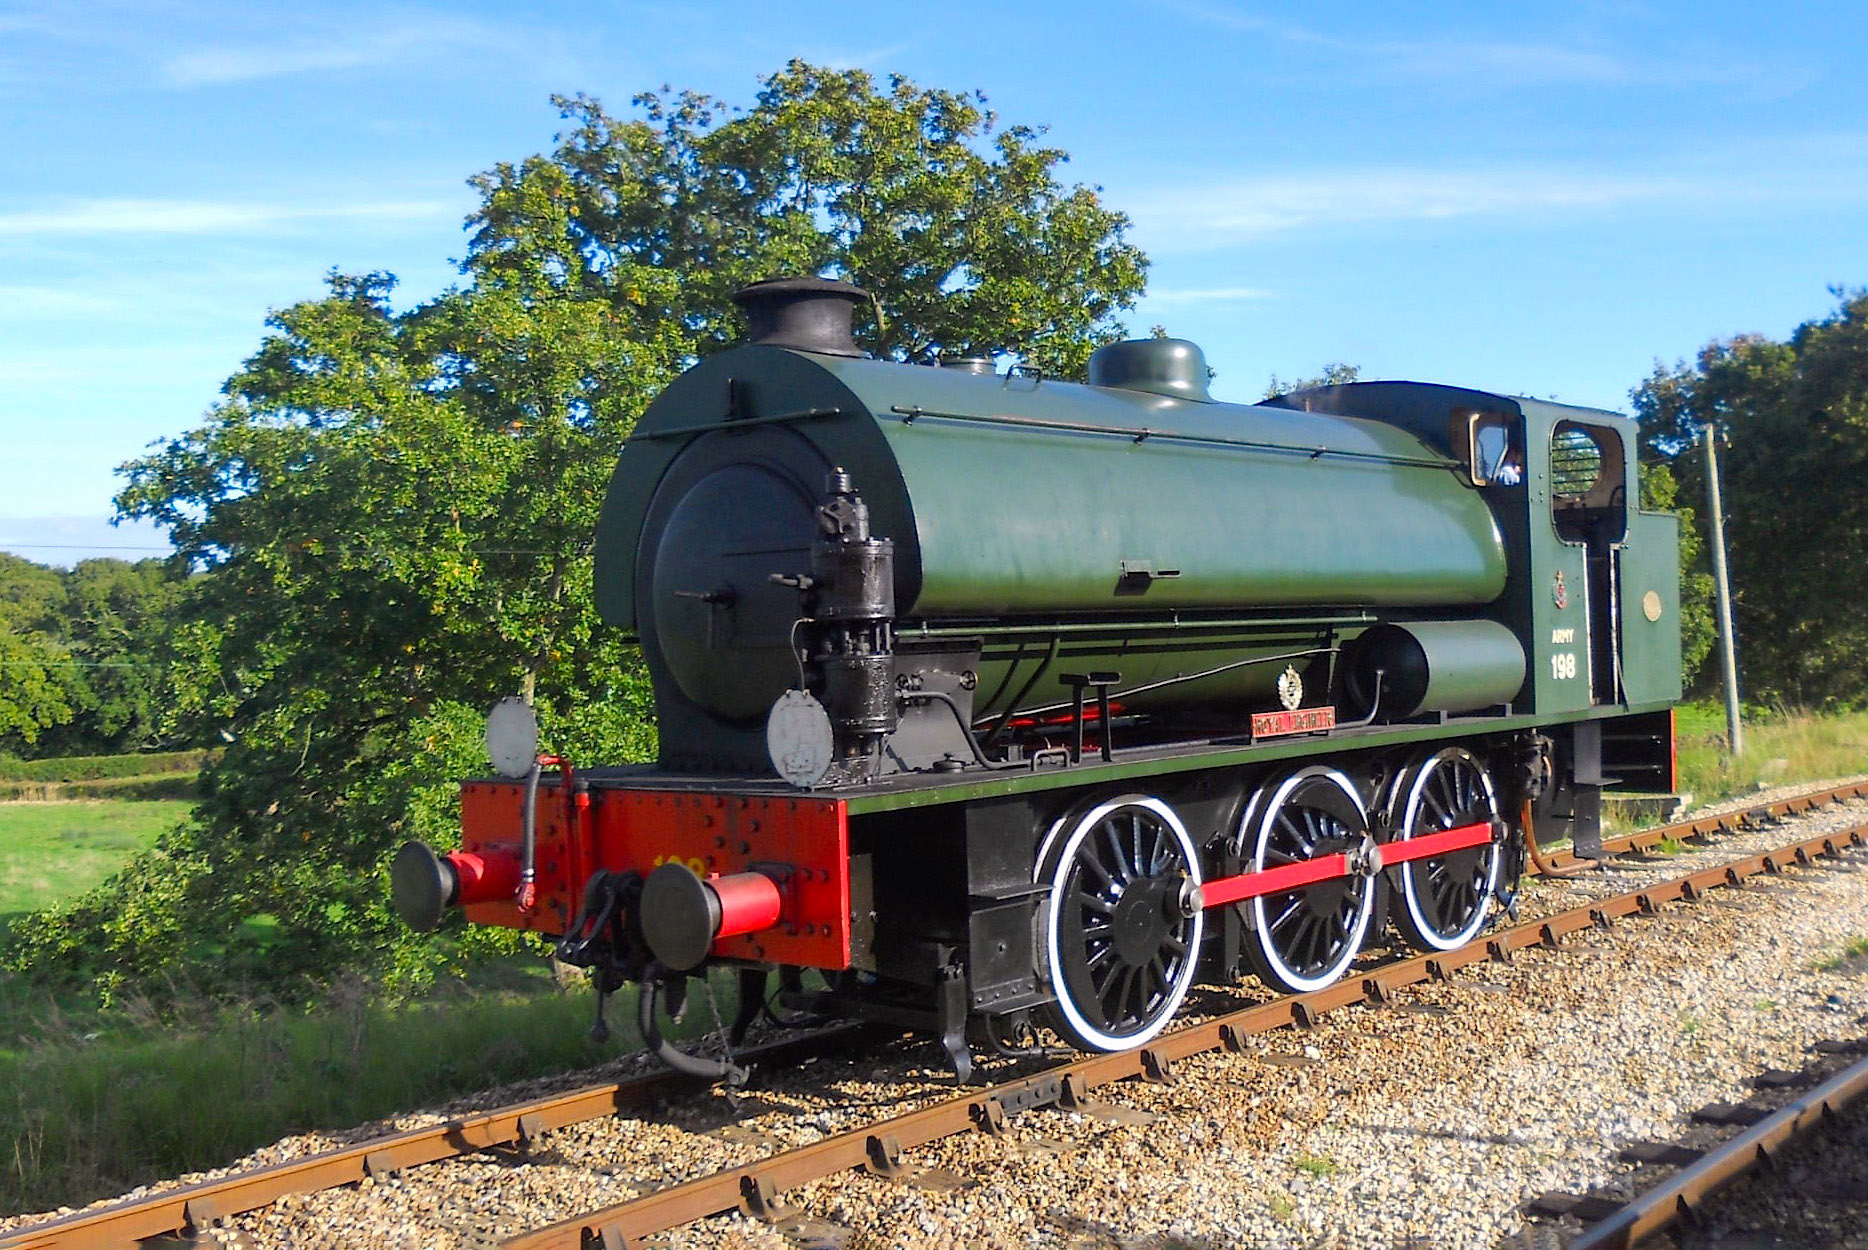 Train à vapeur de l'île de Wight © PeterSkuce - licence [CC BY-SA 4.0] from Wikimedia Commons